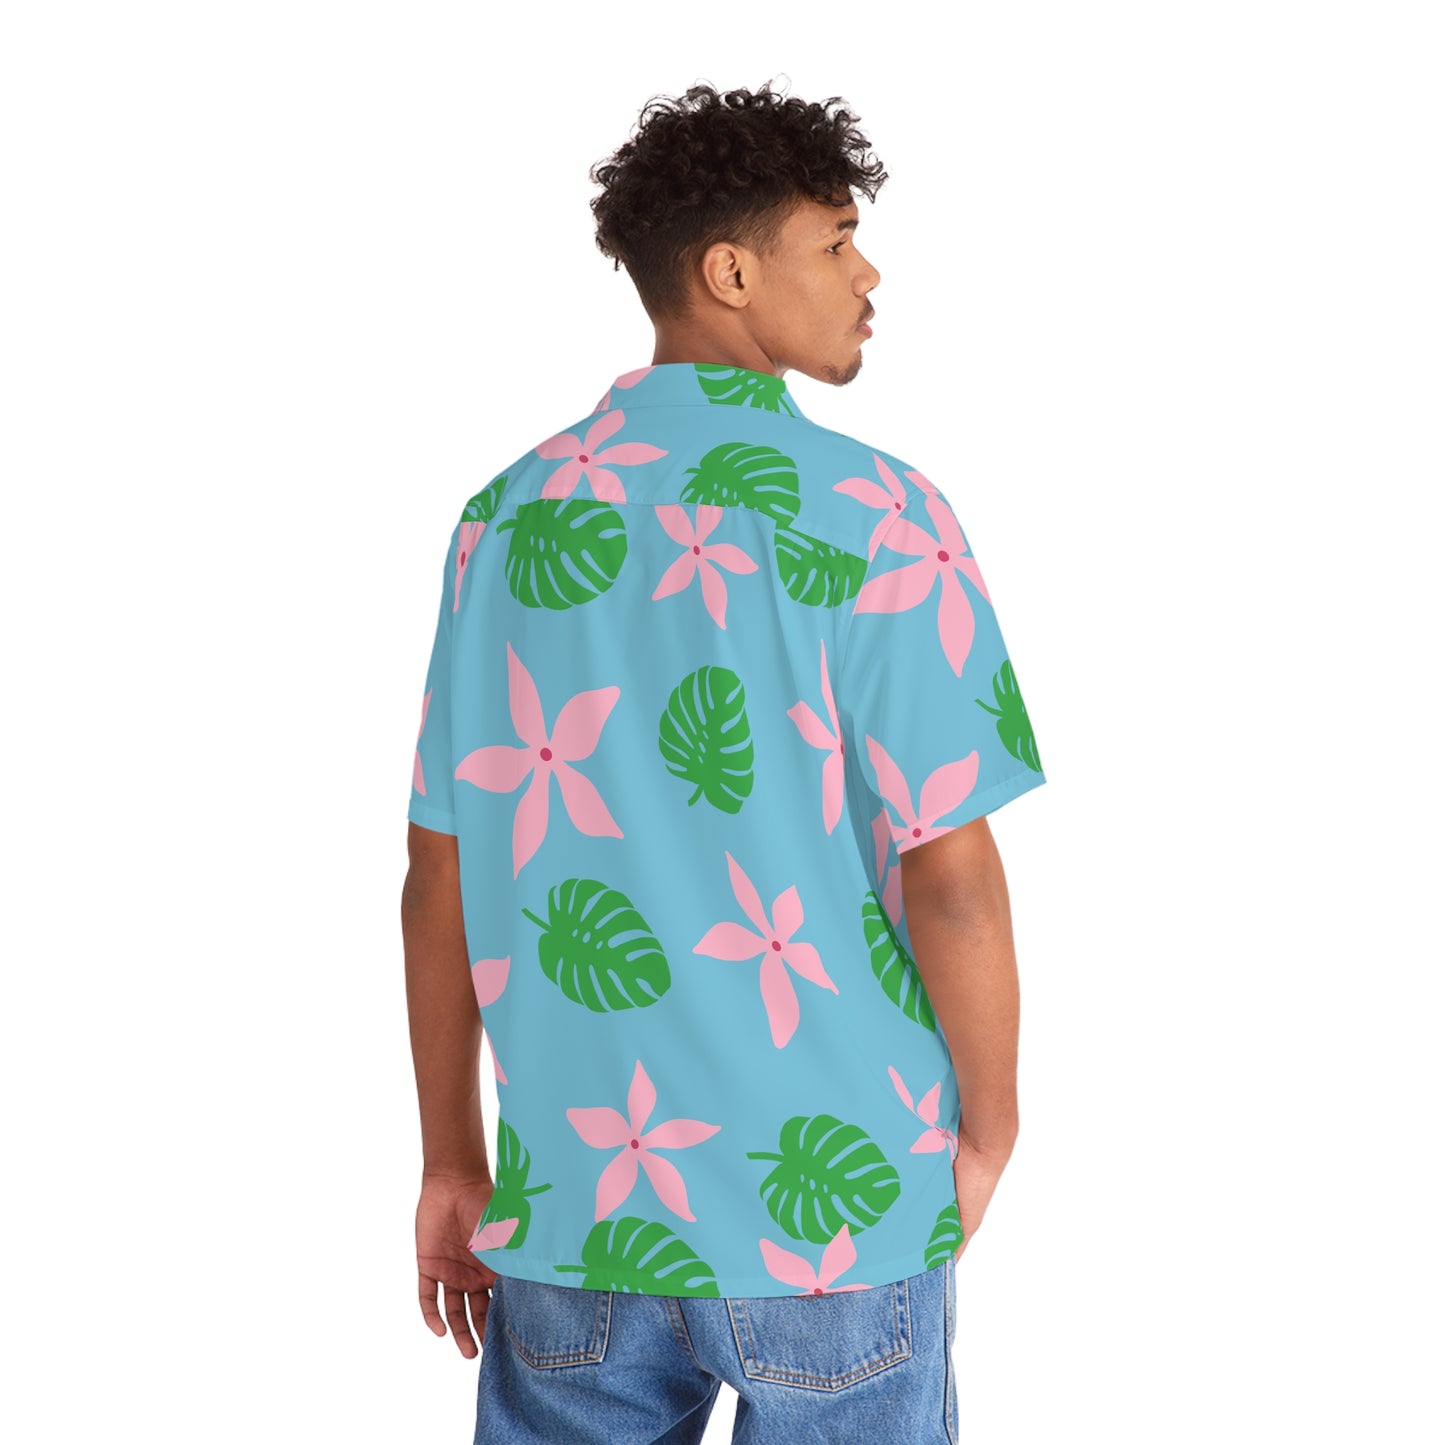 Double Agent Hawaiian shirt